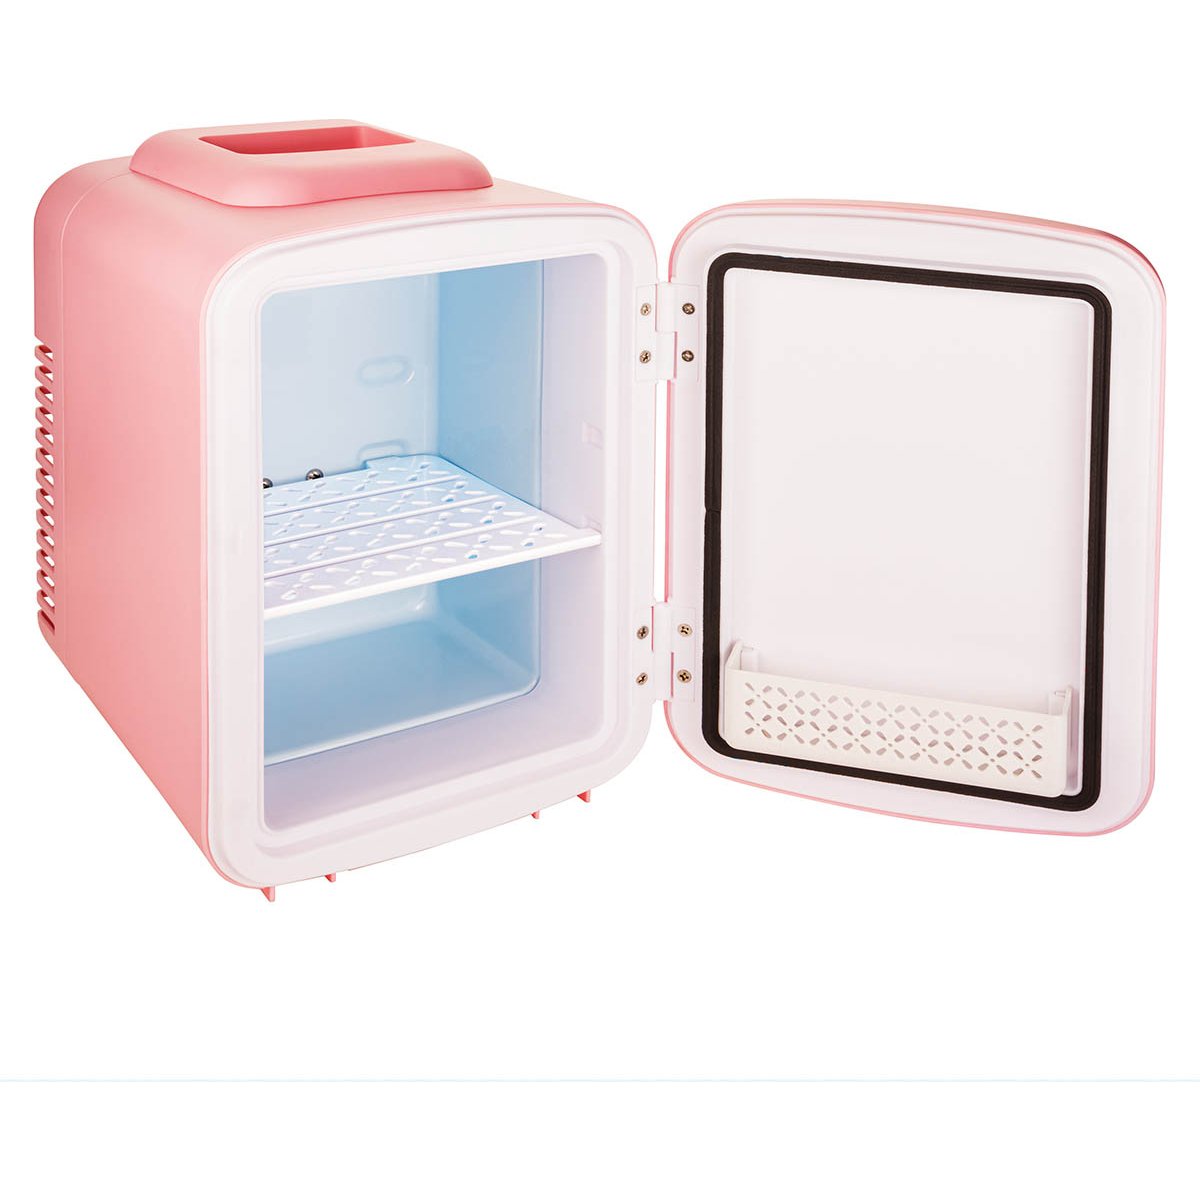 Timco Mini Refrigerador Portatil Skincare